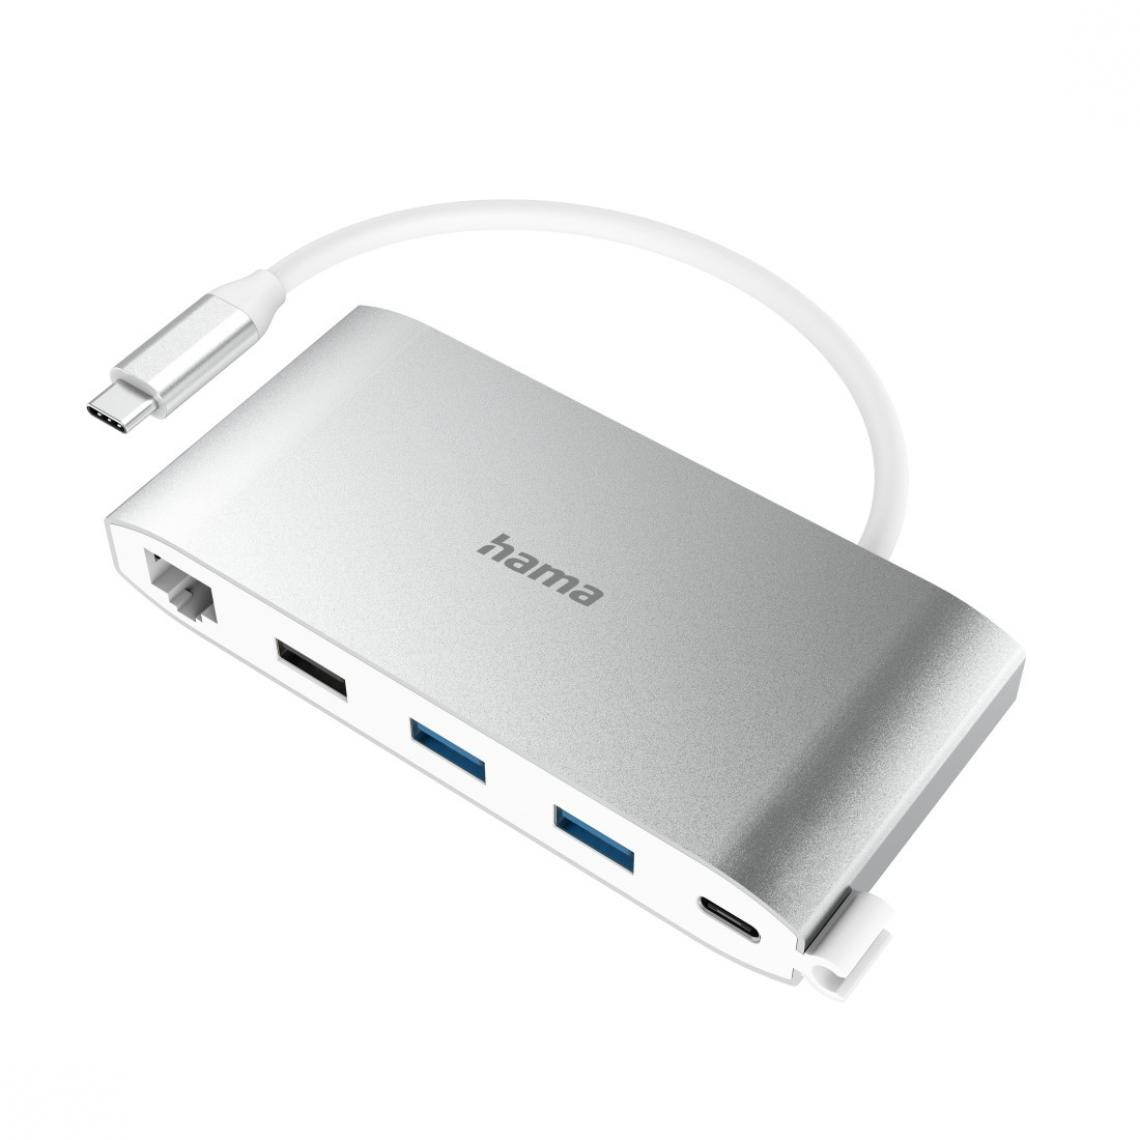 Hama - Hub USB-C, multiport, 8 ports, 3 USB-A, 2 USB-C, VGA, HDMI, LAN - Hub